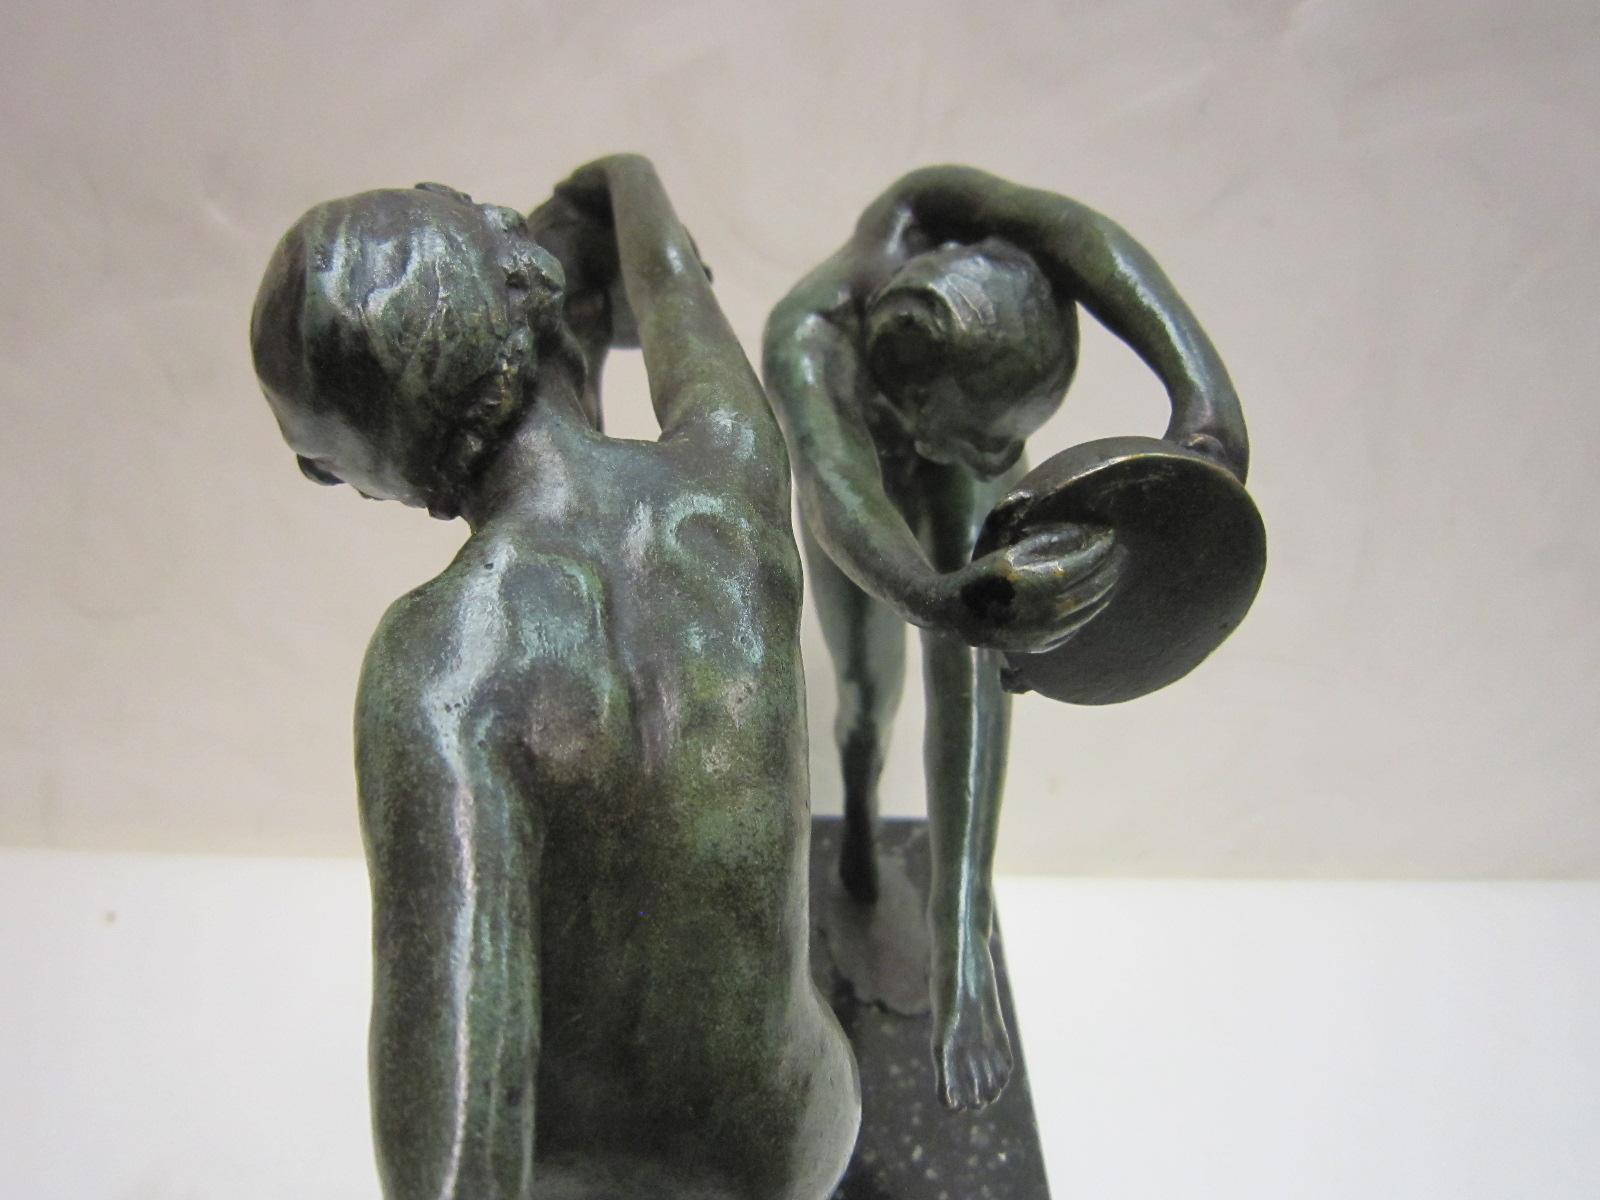 1925 French Art Deco Bronze Sculpture of Dancers Signed Paul de Boulogne  3